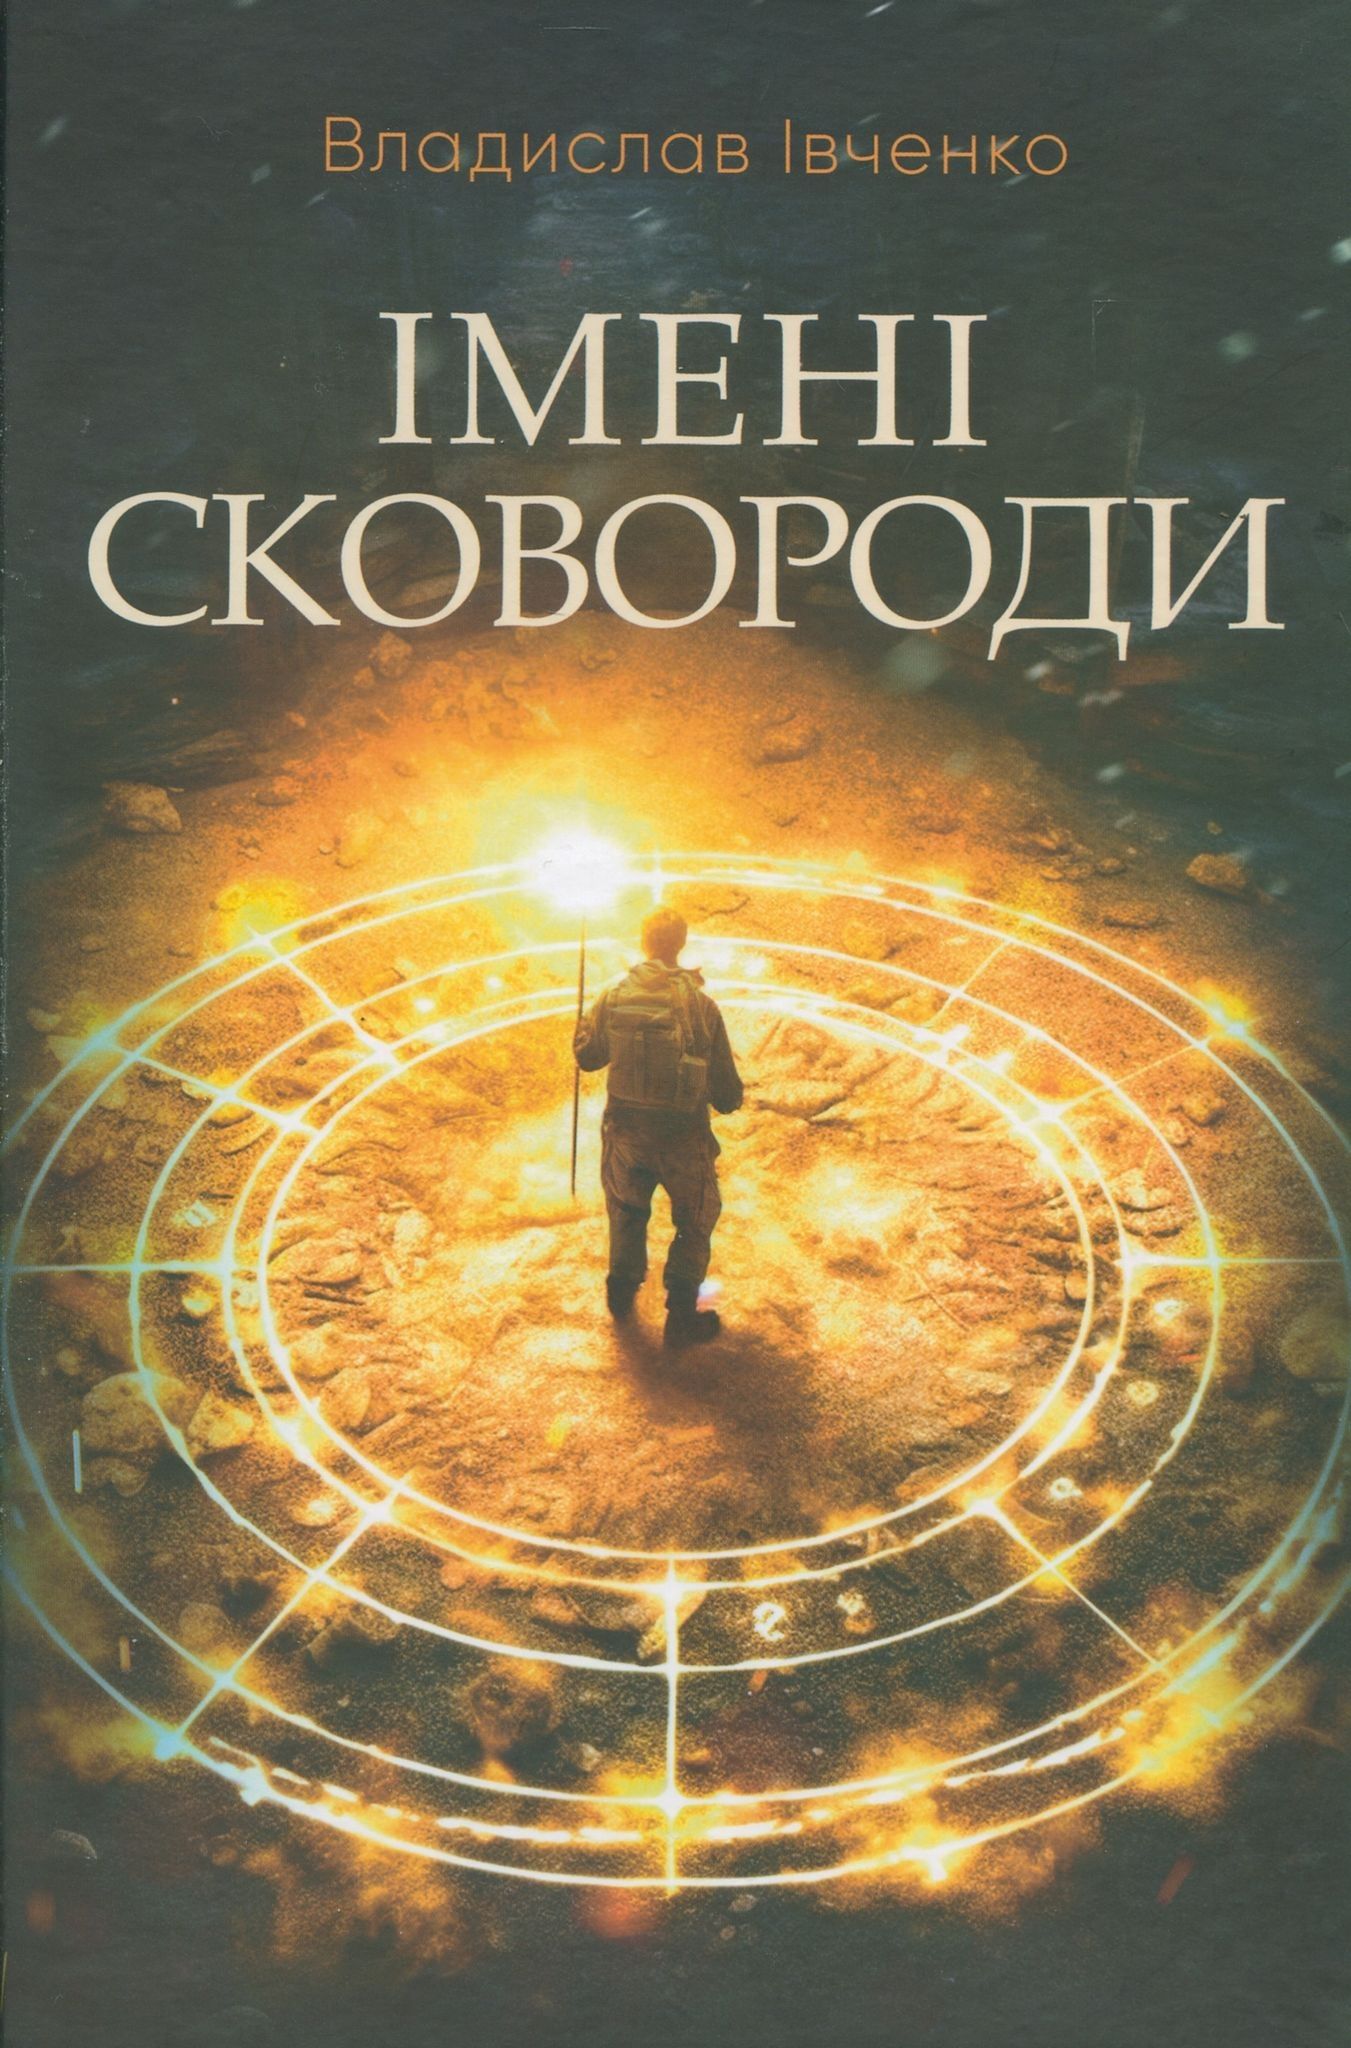 Івченкові зомбі: «АСПушкін» та інша «пацавата кацапщина»